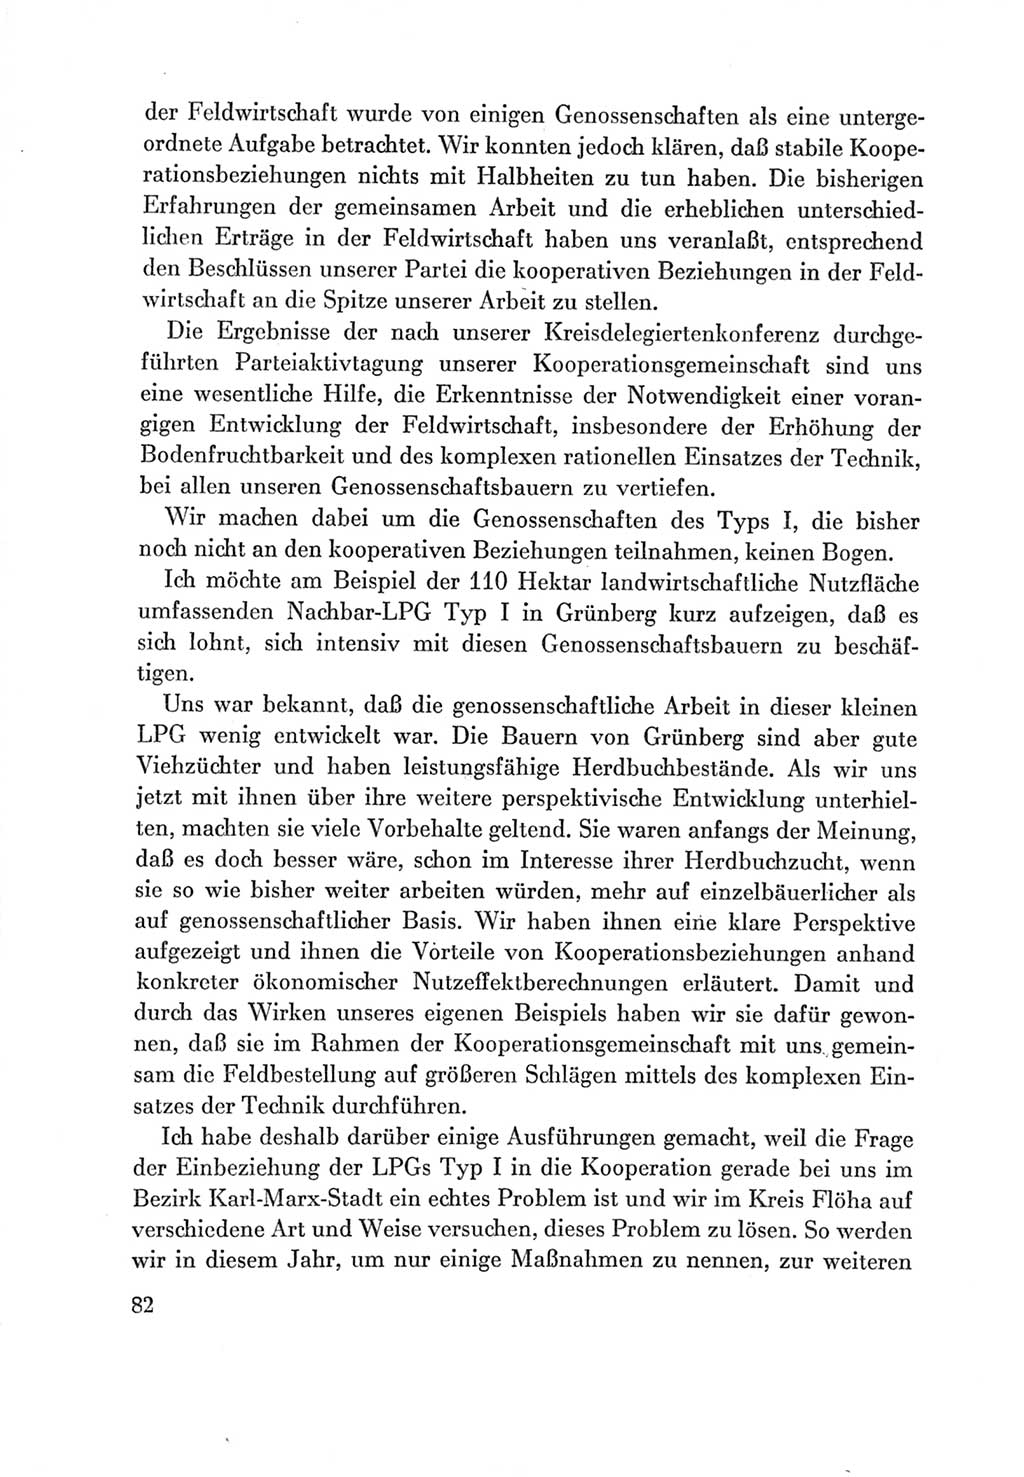 Protokoll der Verhandlungen des Ⅶ. Parteitages der Sozialistischen Einheitspartei Deutschlands (SED) [Deutsche Demokratische Republik (DDR)] 1967, Band Ⅲ, Seite 82 (Prot. Verh. Ⅶ. PT SED DDR 1967, Bd. Ⅲ, S. 82)